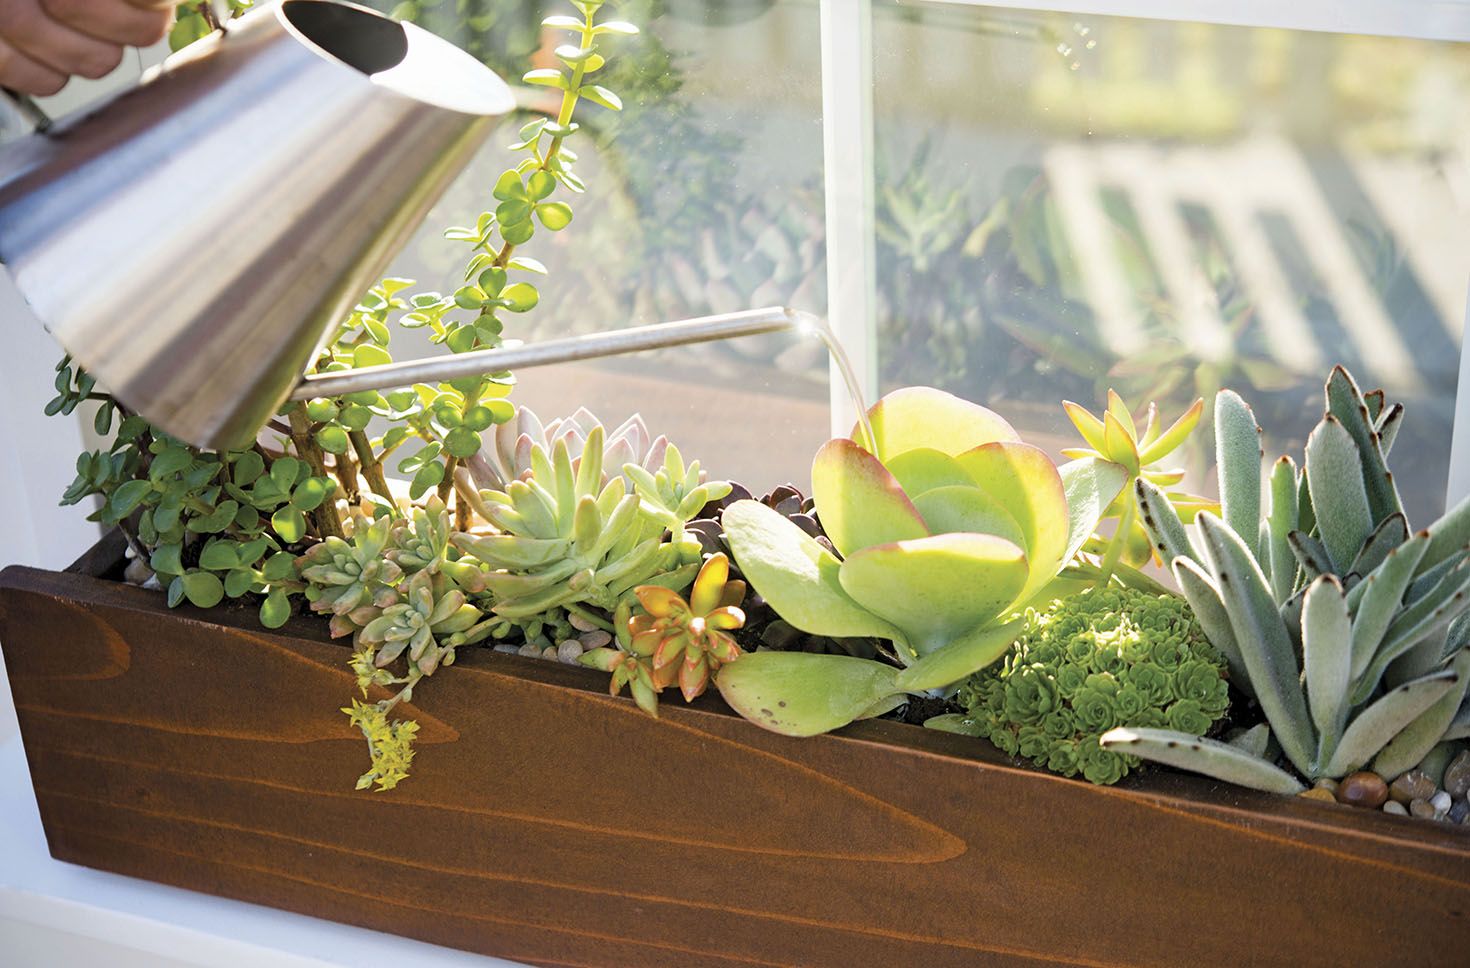 Image of Succulent garden in window box